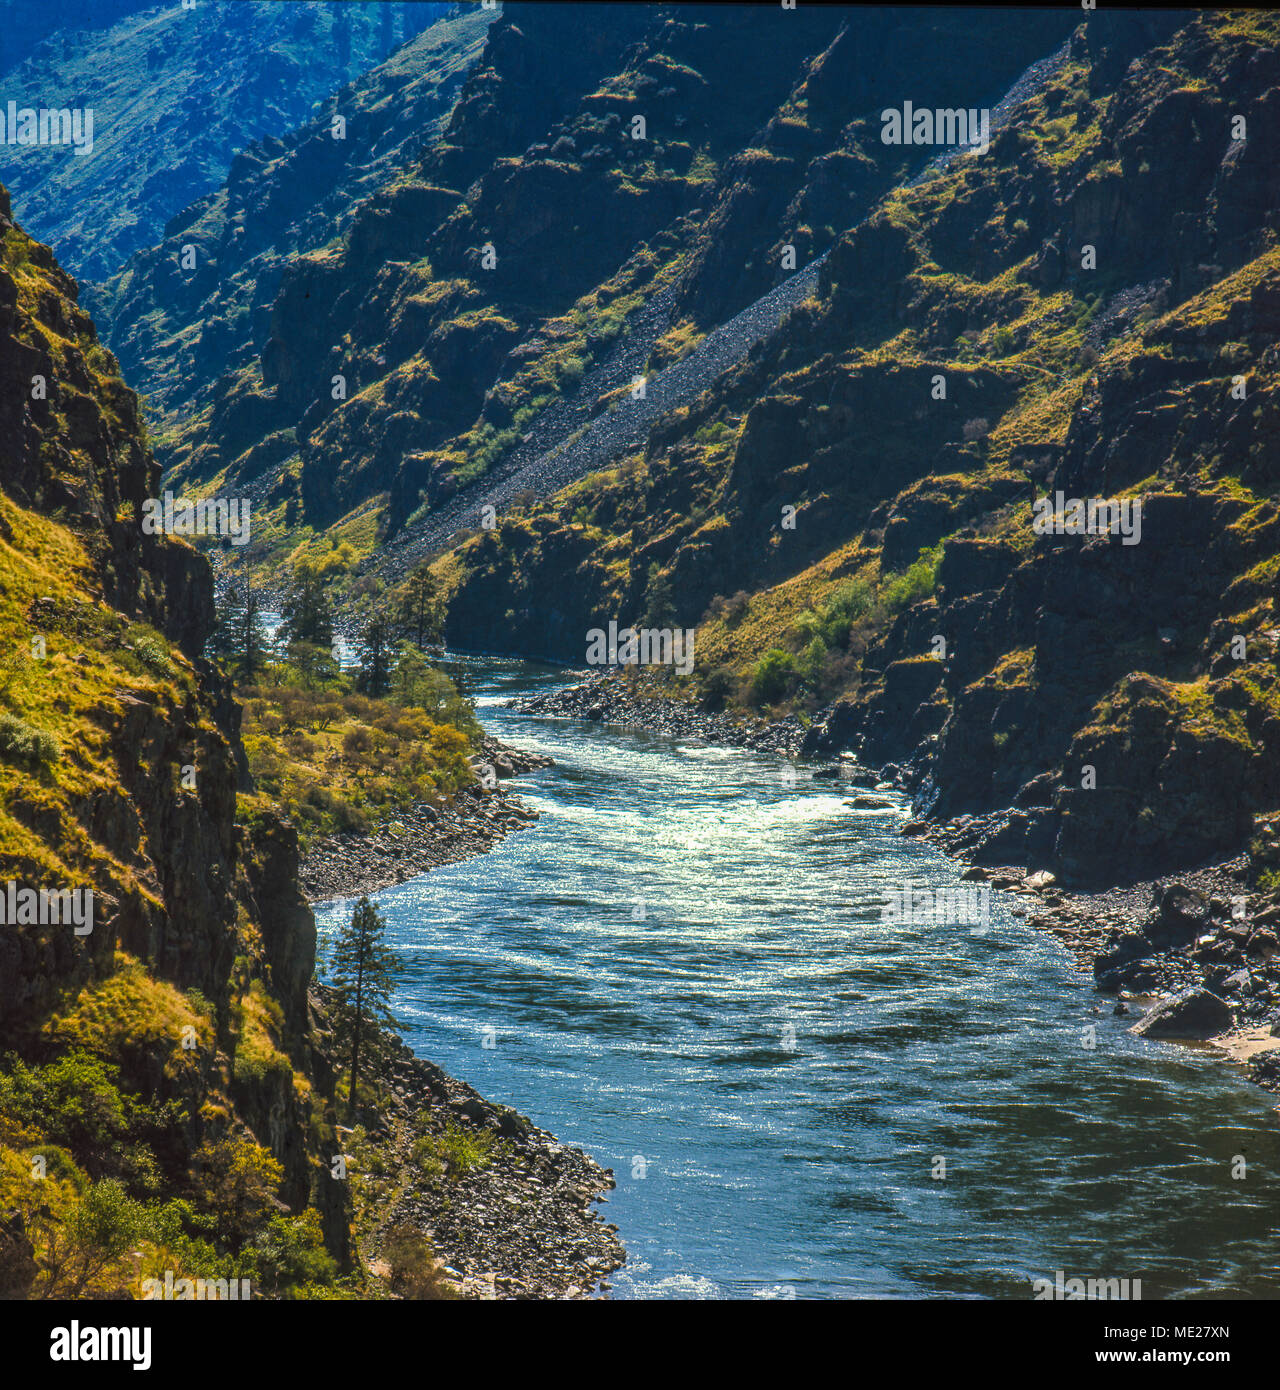 Hells Canyon, Snake River, tiefste Schlucht in Nordamerika (7900 Fuß), bildet die Grenze zwischen Idaho und Oregon. Fotograf Norton führte den Kampf zu stoppen Stockfoto